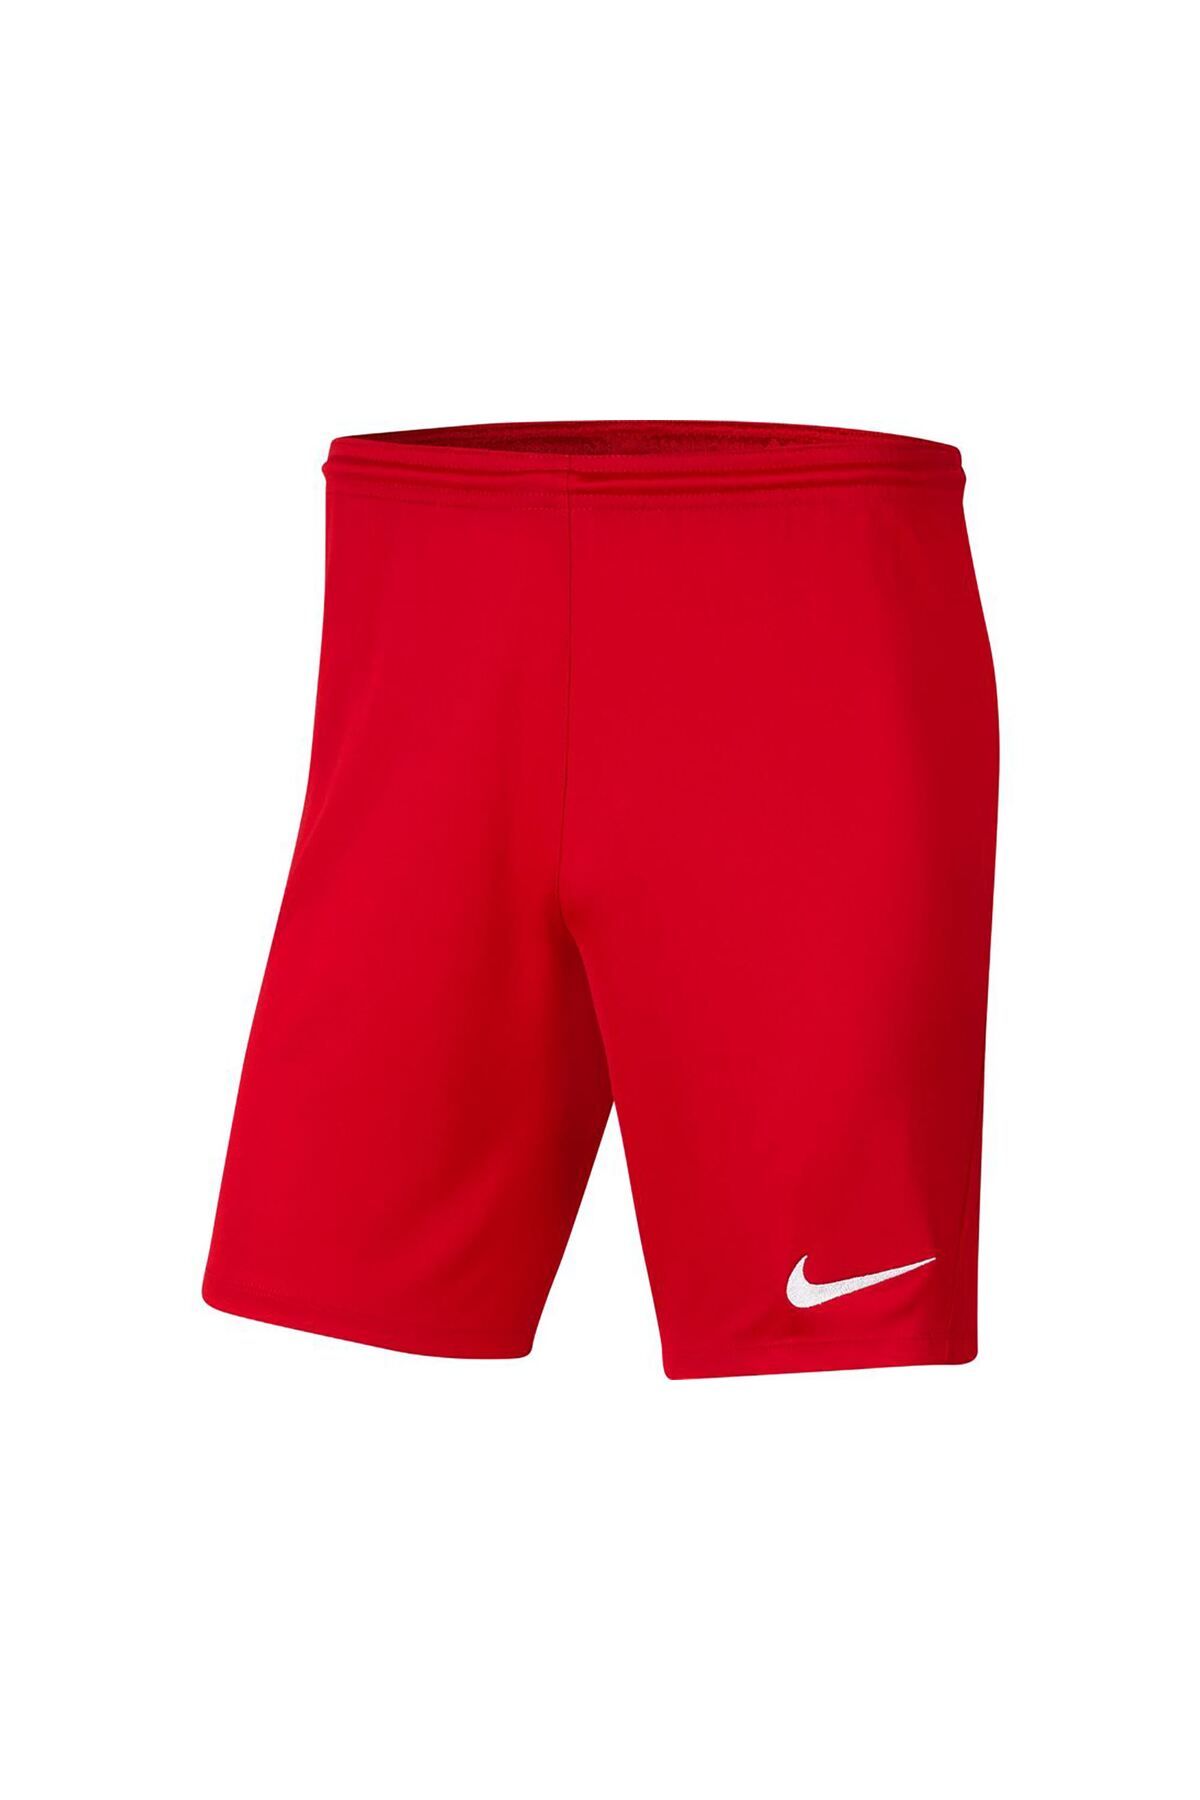 Nike Erkek Kırmızı Şort Bv6855-657-657